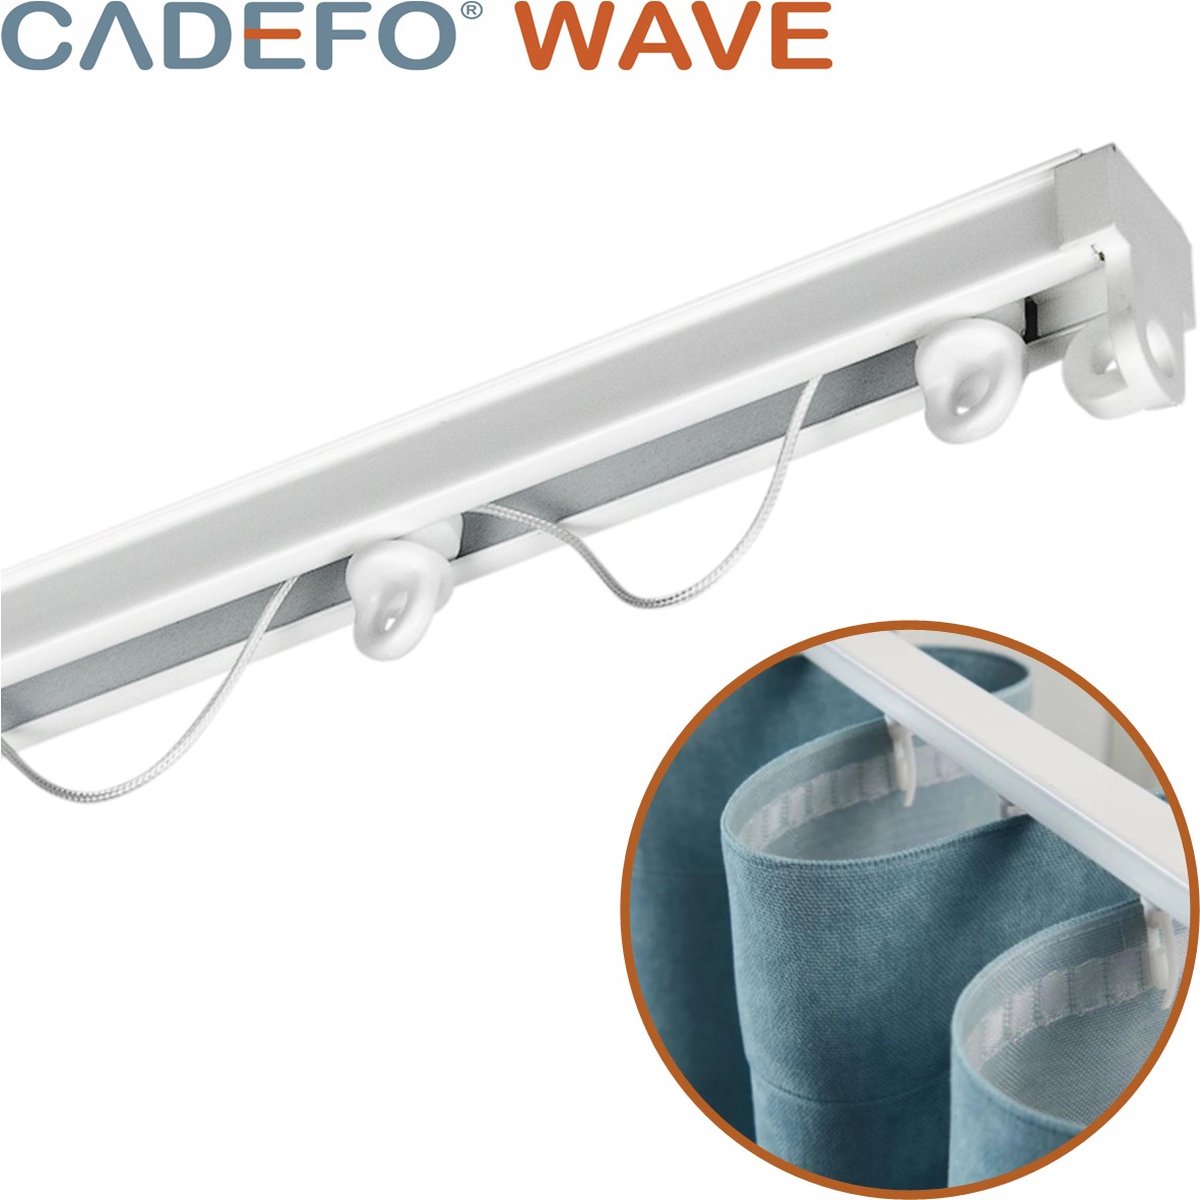 CADEFO WAVE (501 - 550 cm) Gordijnrails - Compleet op maat! - UIT 1 STUK - Leverbaar tot 6 meter - Plafondbevestiging - Lengte 541 cm